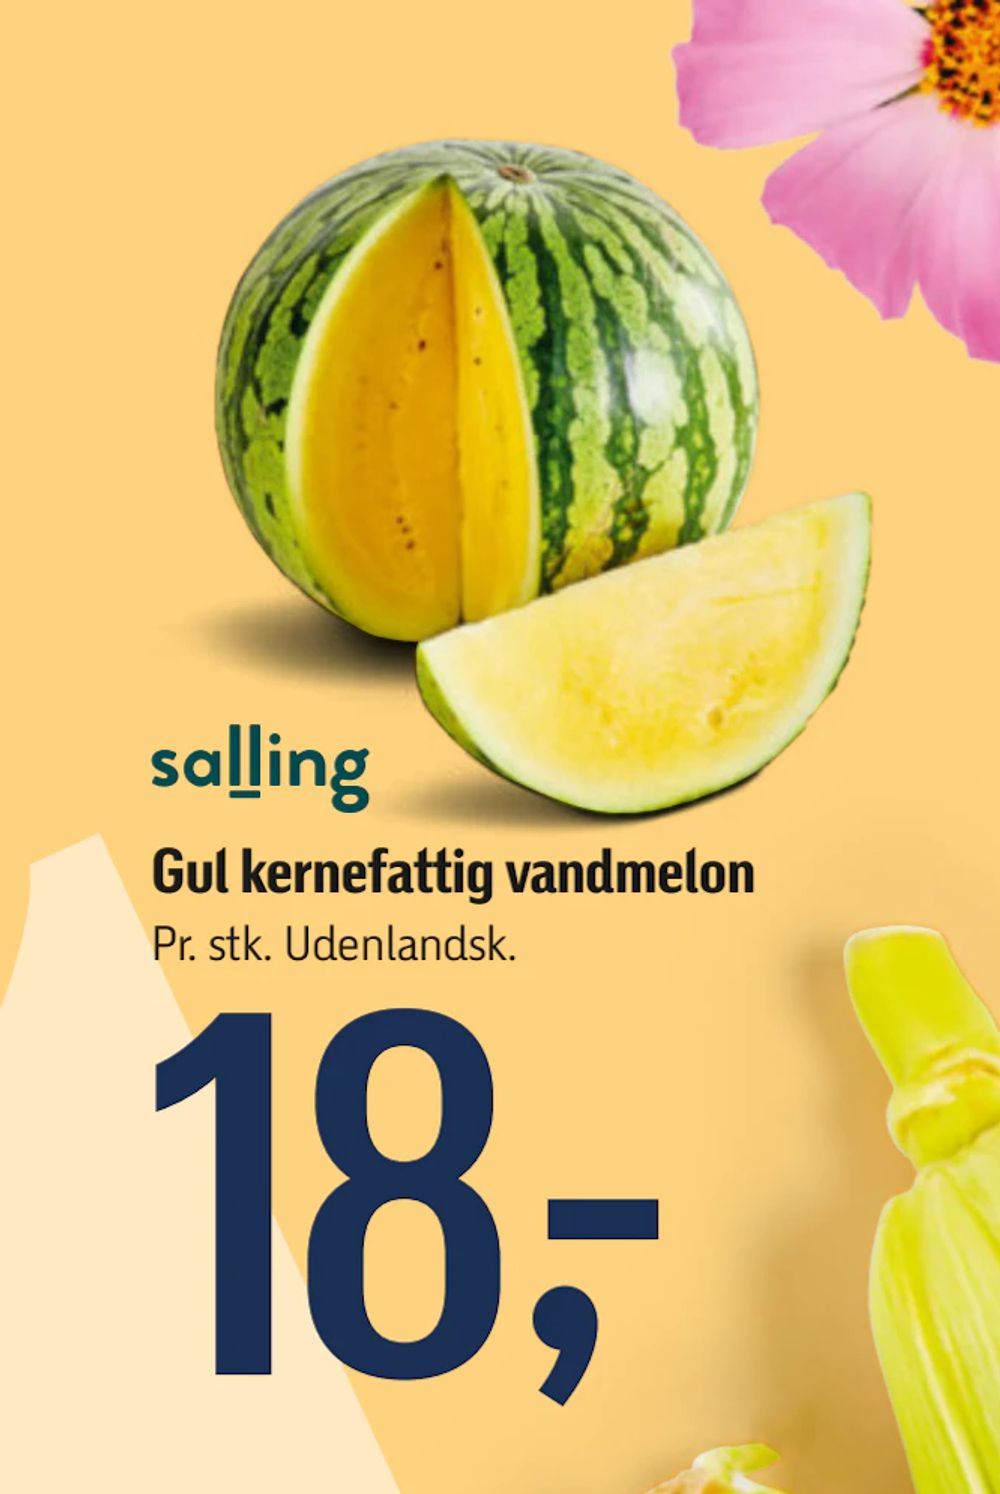 Tilbud på Gul kernefattig vandmelon fra føtex til 18 kr.